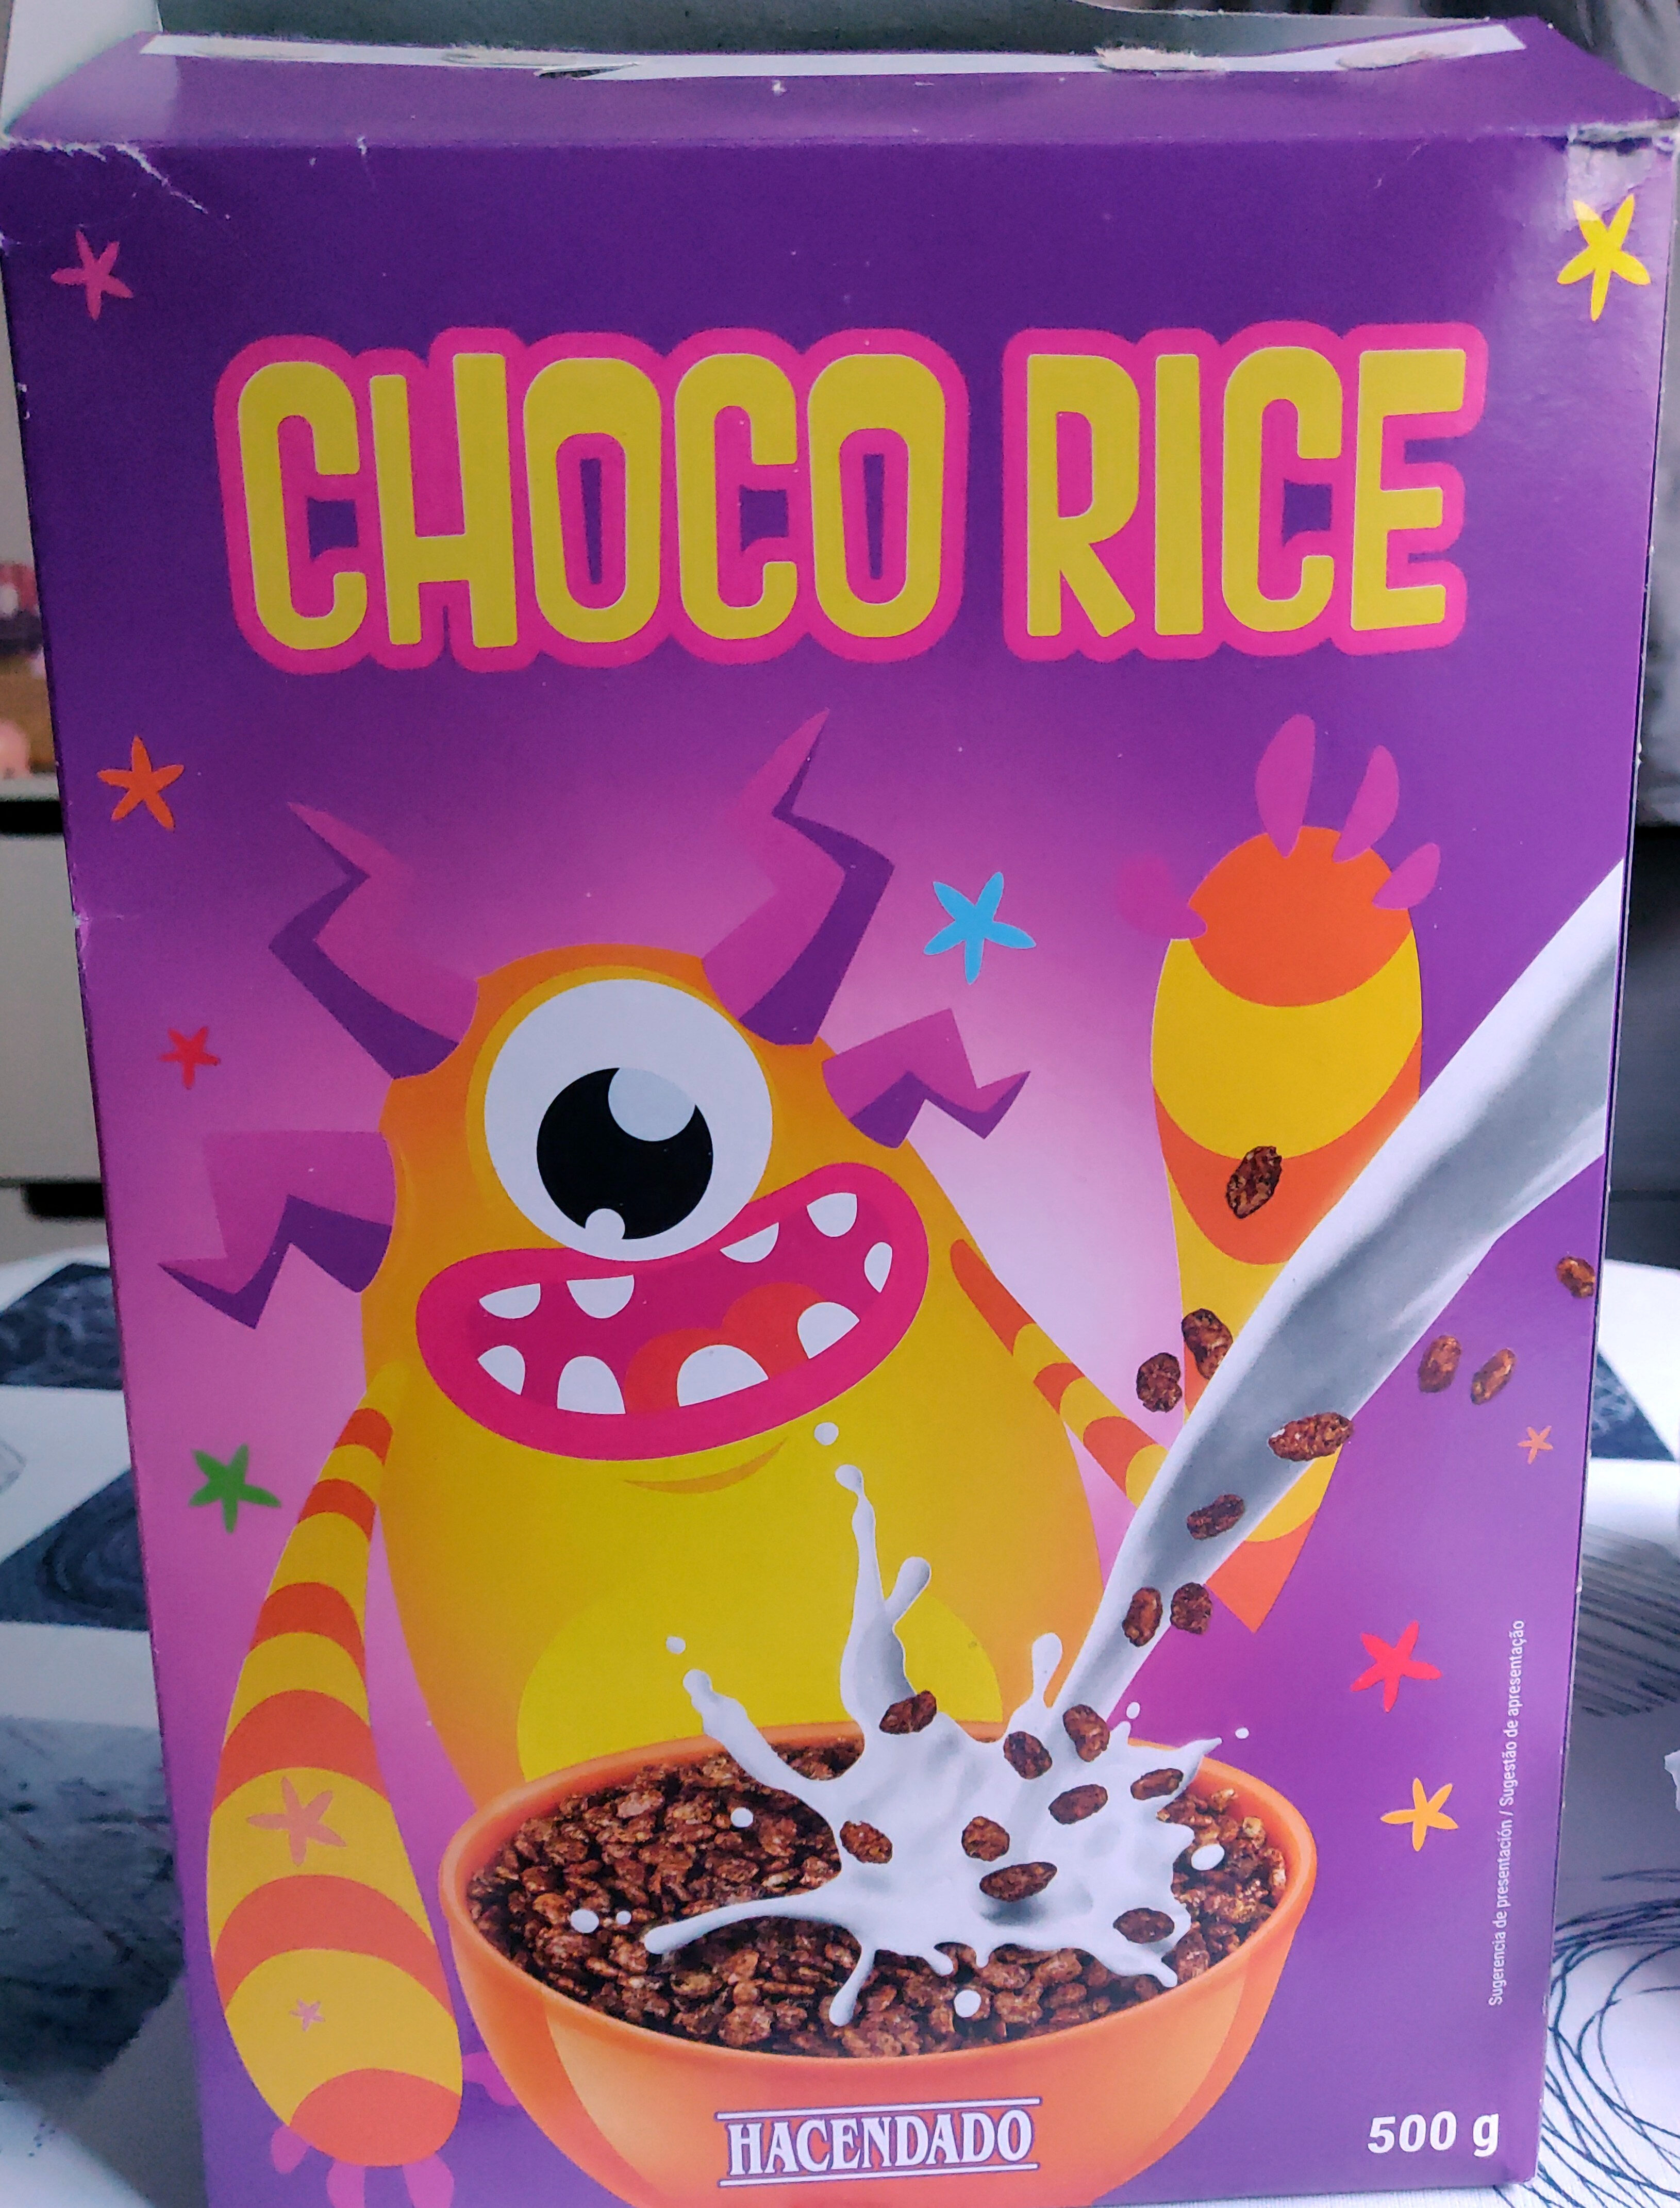 Choco rice - Product - es